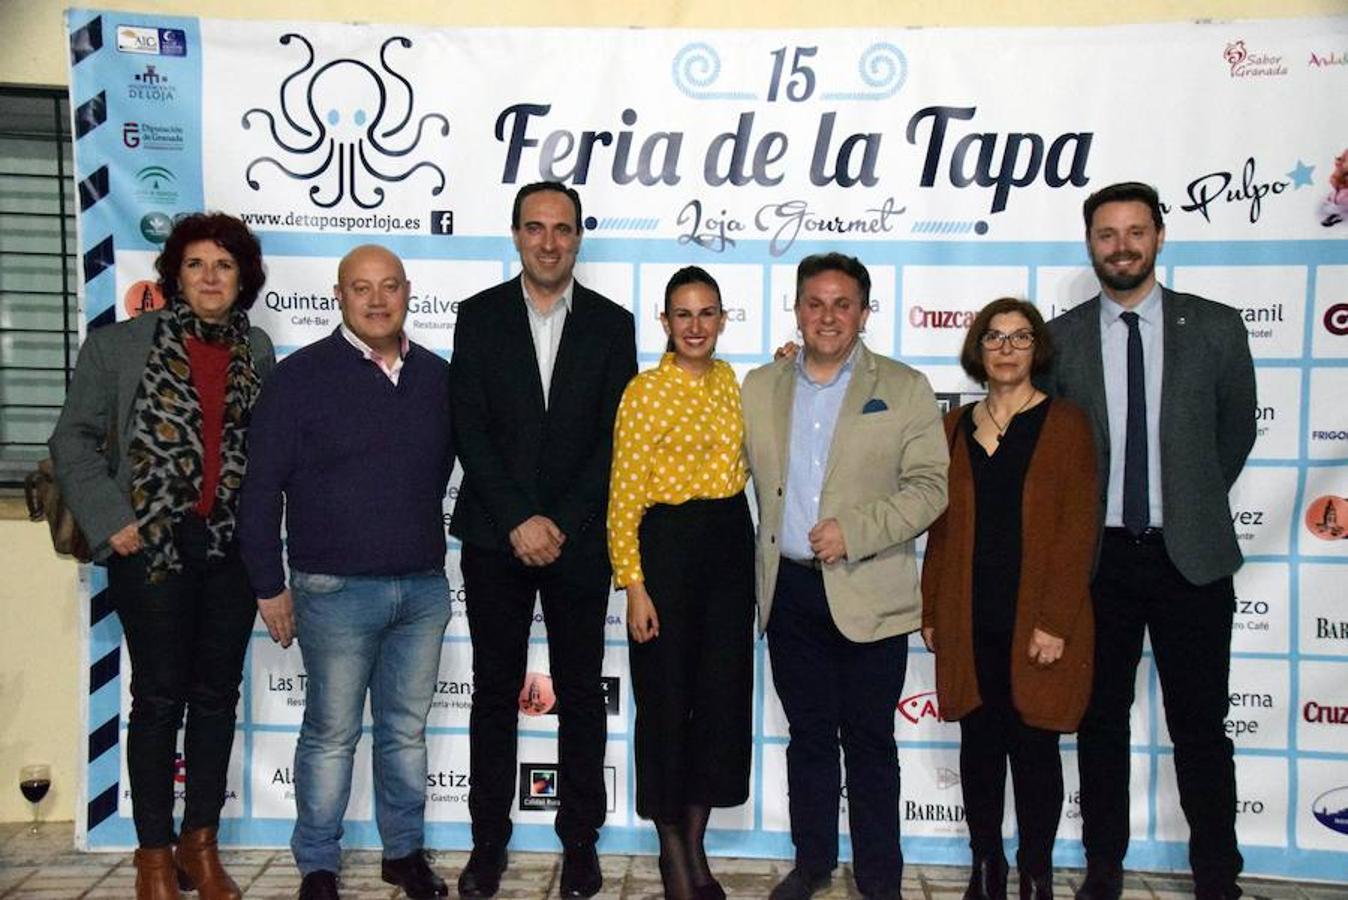 La Asociación Lojeña de Comercio e Industria (ALCI) vuelve a apostar un año más por su Feria de la Tapa, del 12 al 15 de abril. Doce establecimientos de la ciudad participan en esta XV edición, que se presentó en la sede de la ALCI con la presencia de patrocinadores y colaboradores, como el Ayuntamiento de Loja, la Consejería de Empleo, Empresa y Comercio de la Junta de Andalucía y el Patronato de Turismo de la Diputación Provincial de Granada.